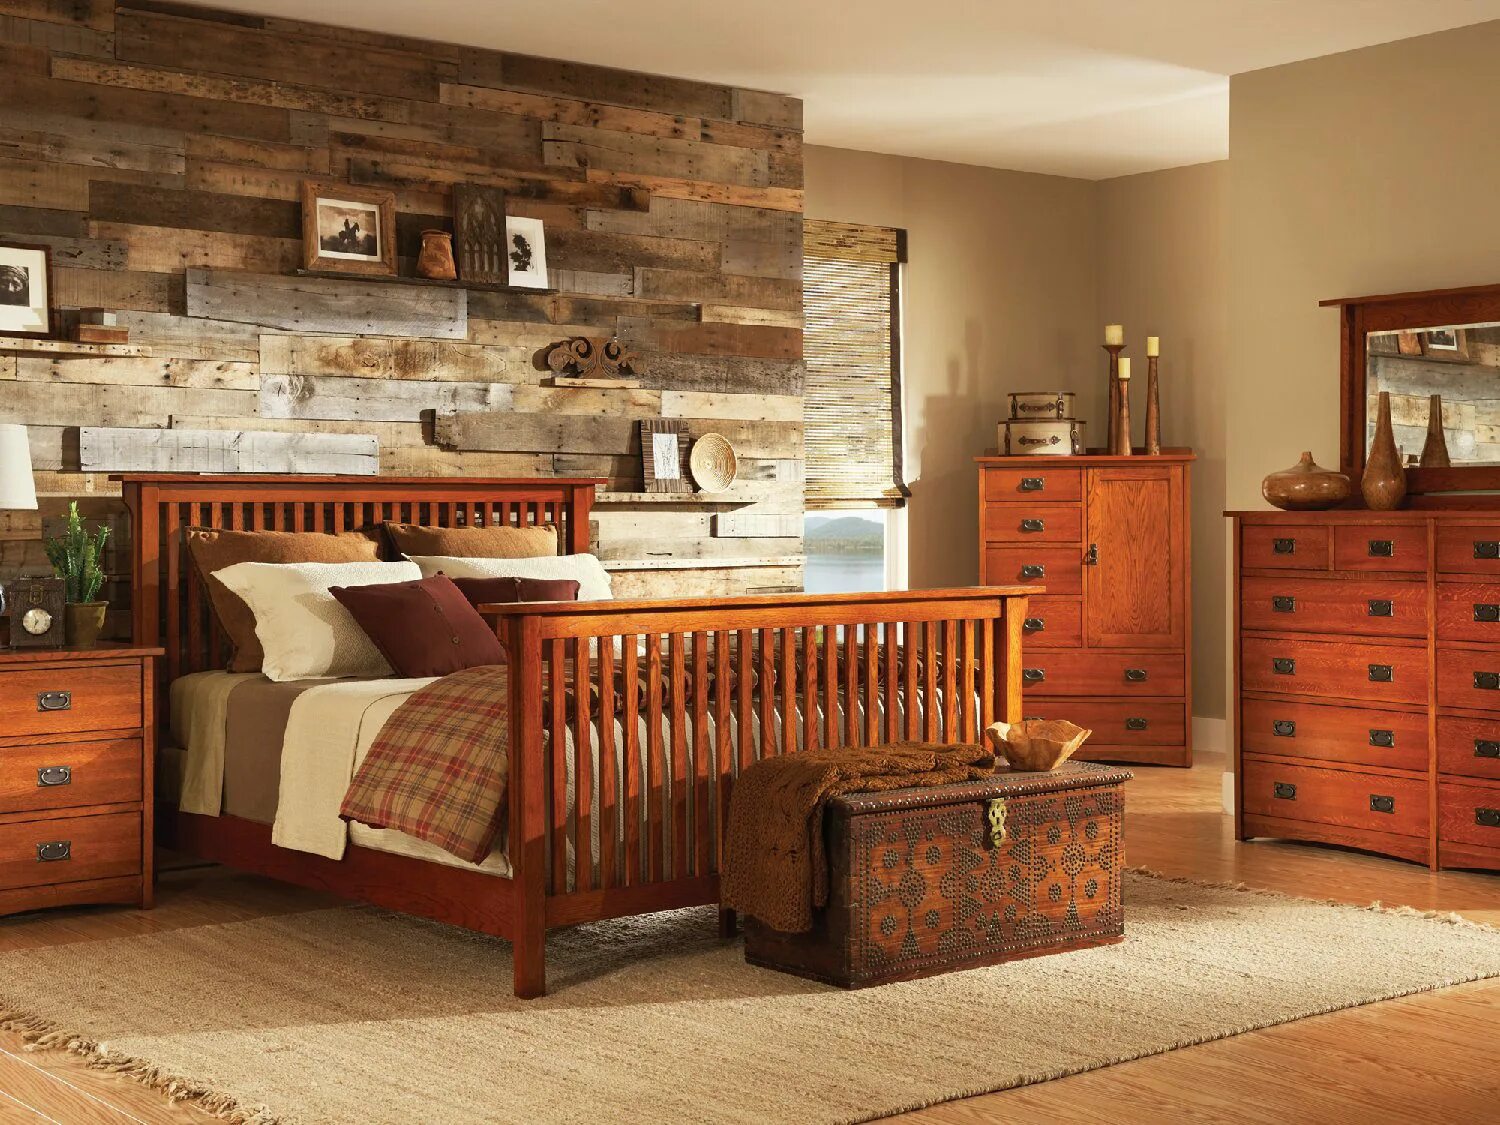 Спальня мебель дерево. Комната с деревянной мебелью. Деревянная мебель в интерьере. Спальня из дерева. Спальня с деревянной мебелью.